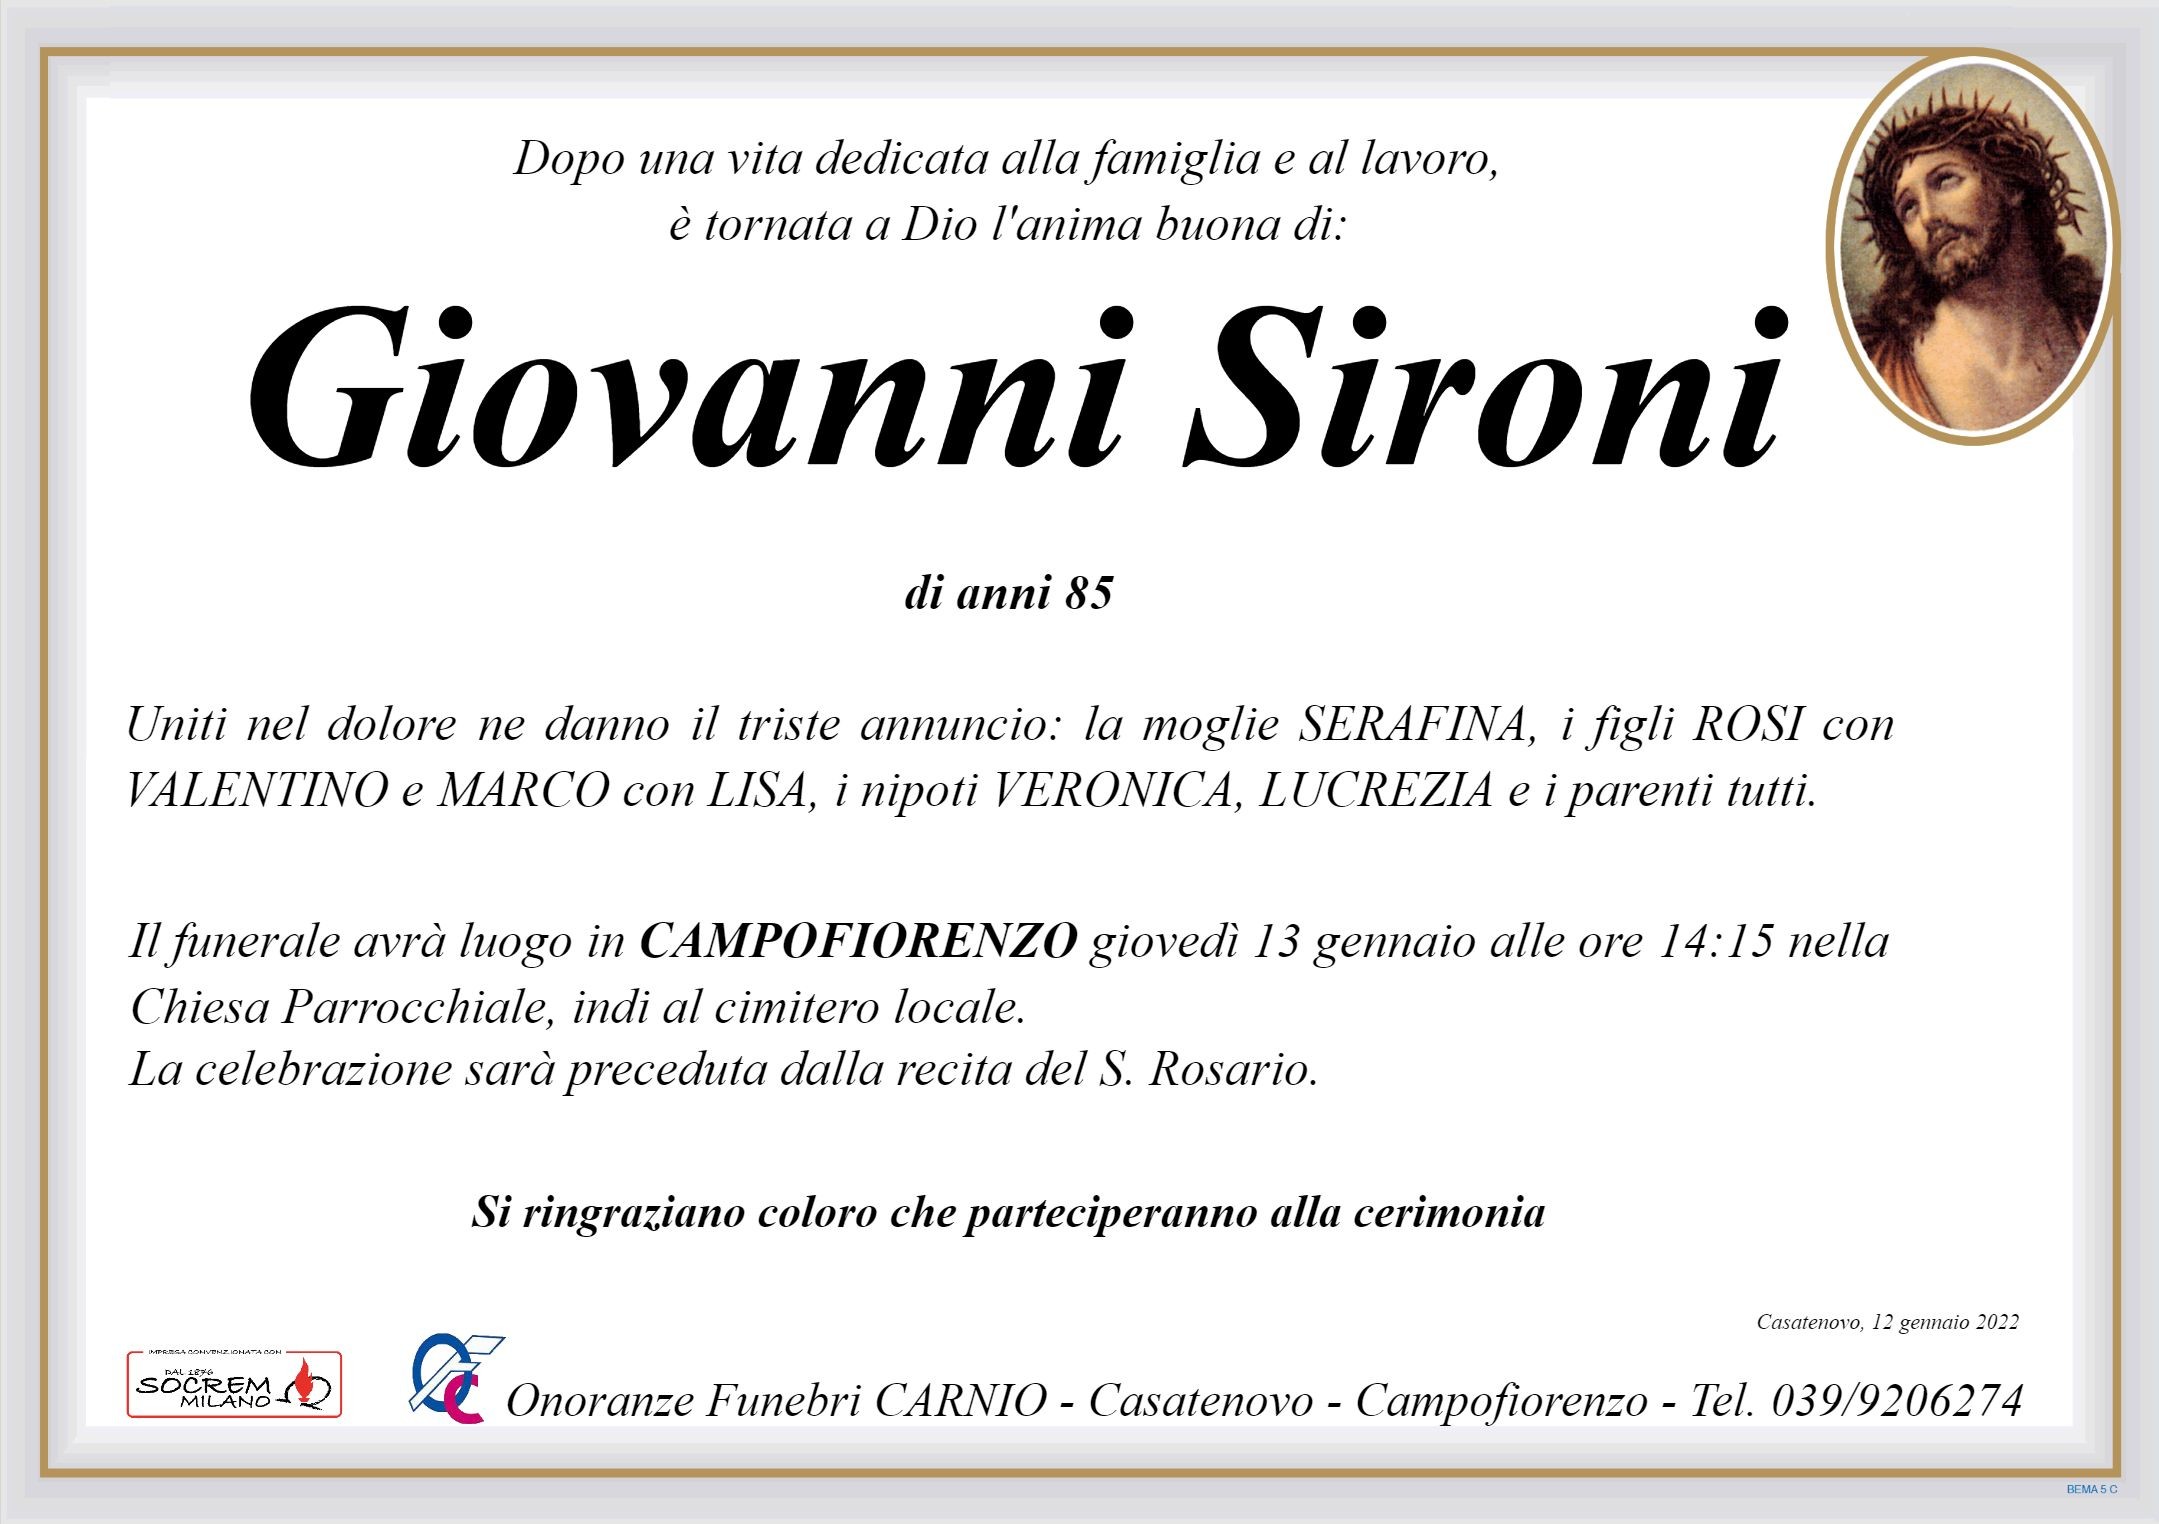 Giovanni Sironi